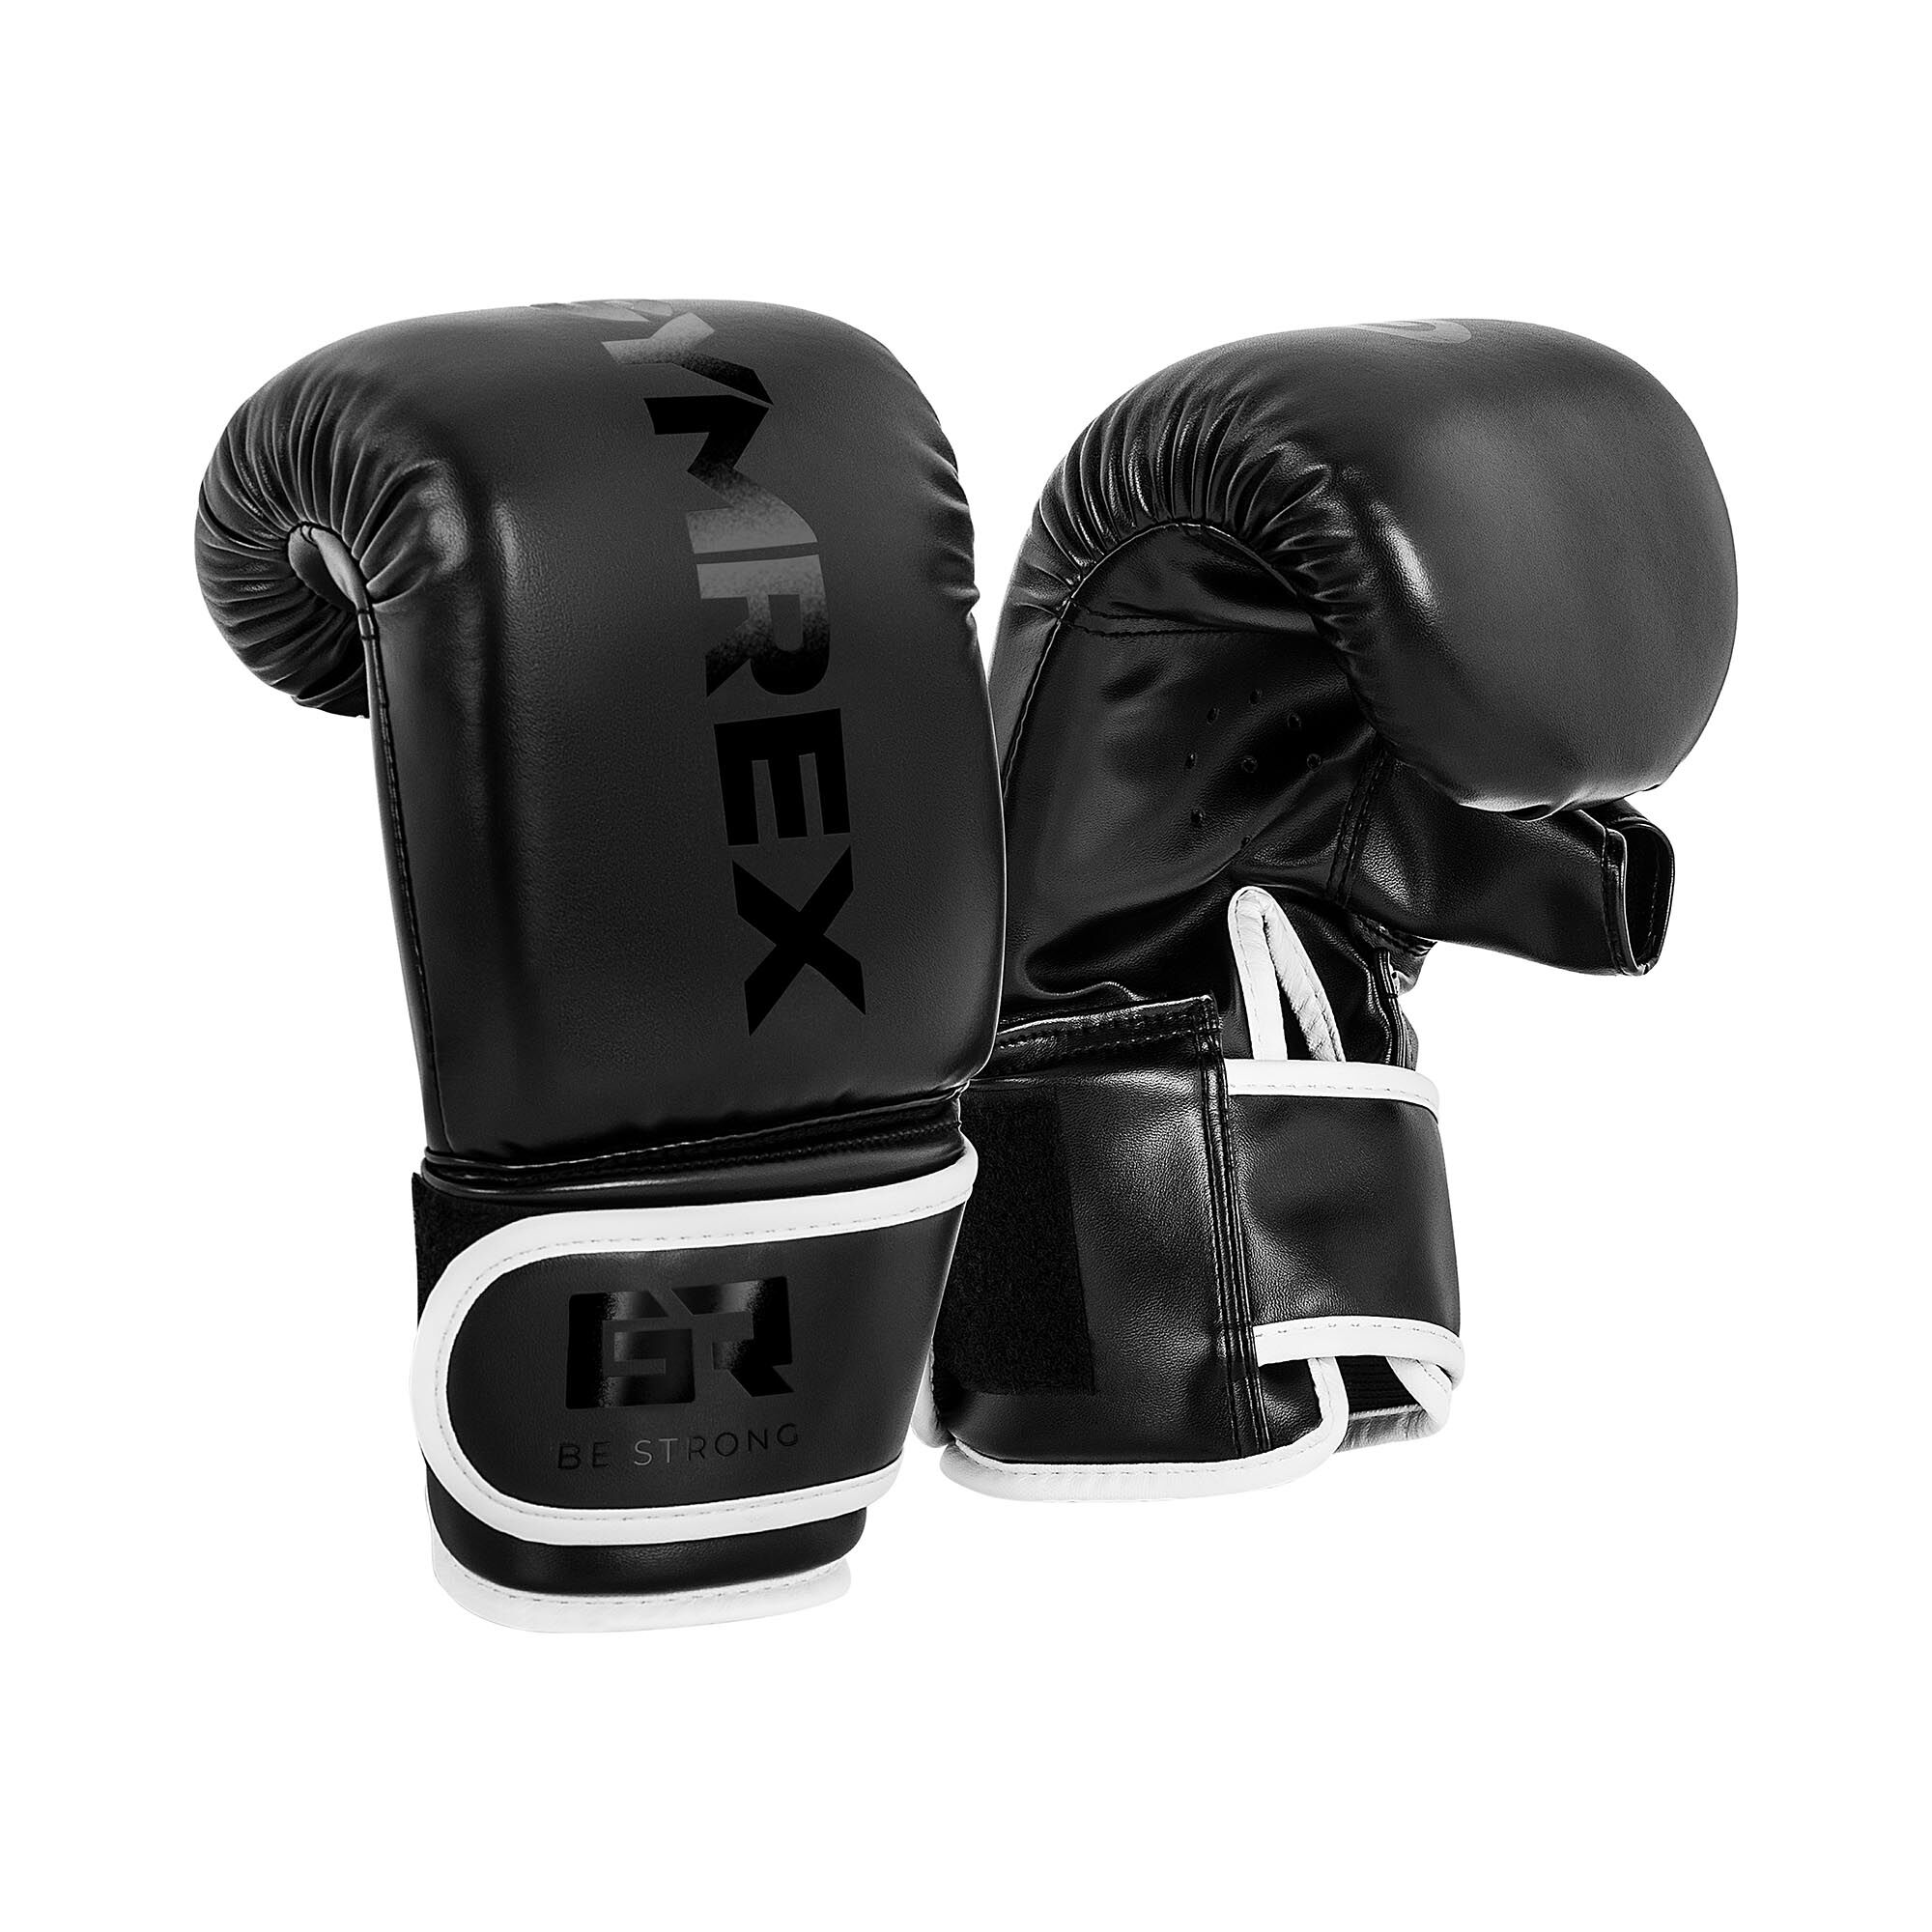 Gymrex Boxing Bag Gloves - 10 oz - black